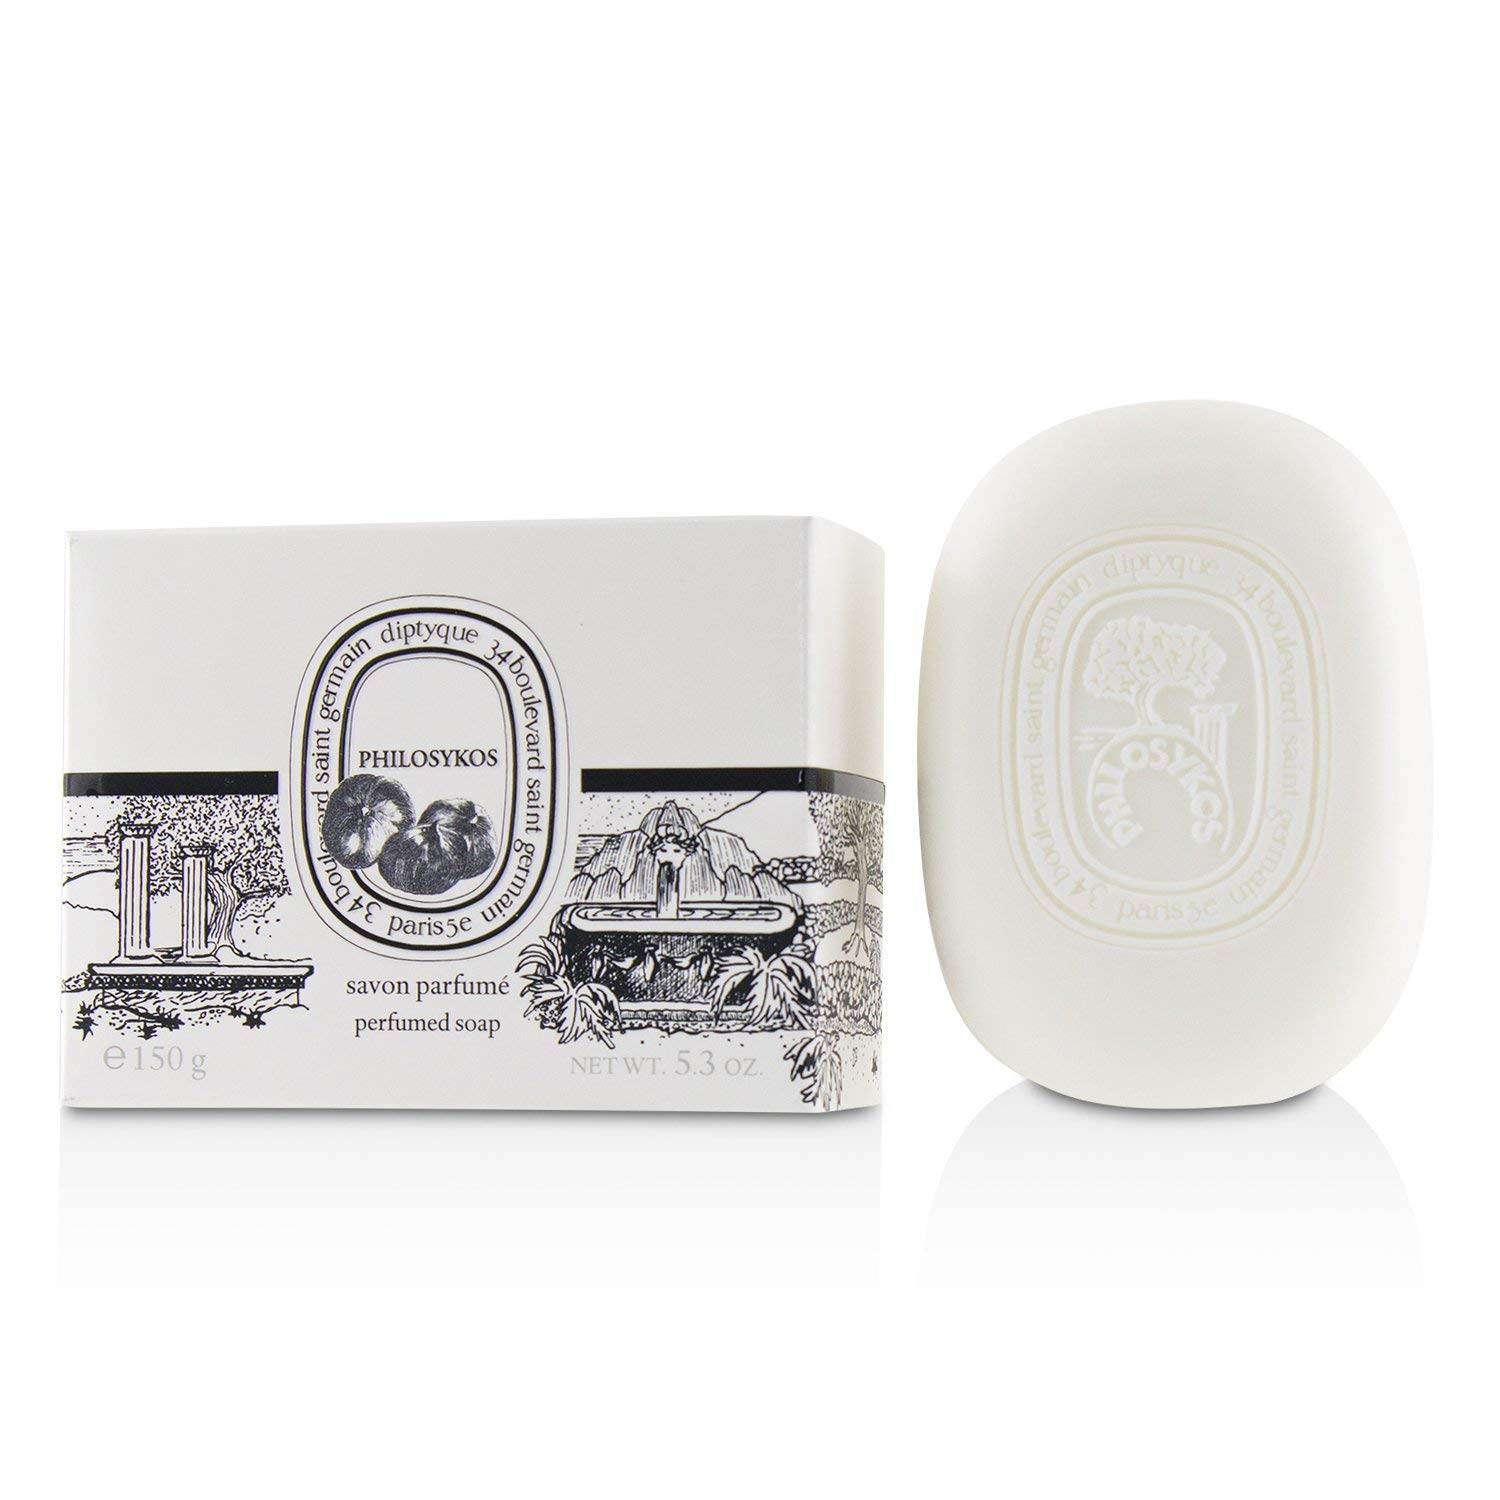 Diptyque Philosykos Perfumed Soap 150 g / 5.3 oz